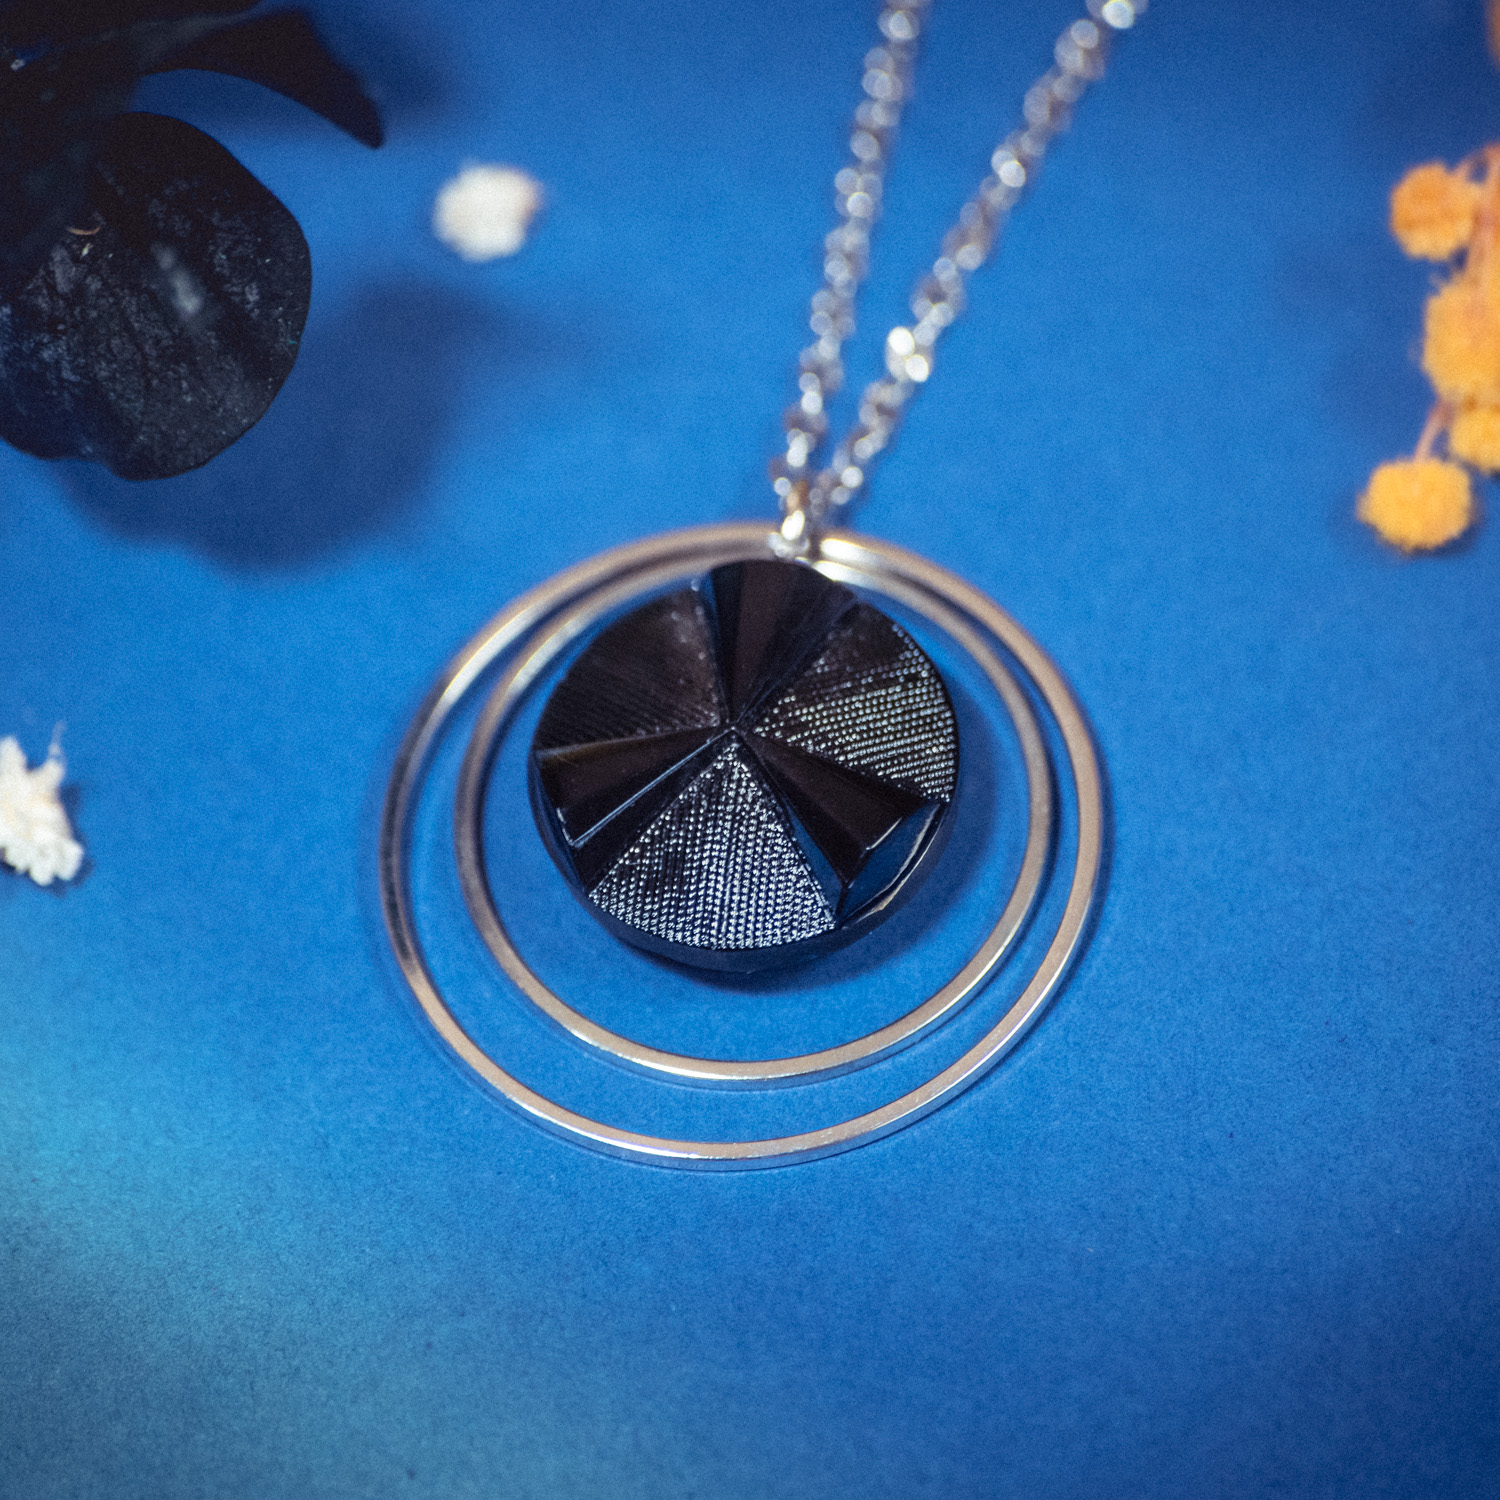 Assuna – Collier Lunare Angèle bleu noir – bouton ancien 1940 – collier d’inspiration vintage en forme de croissant de lune